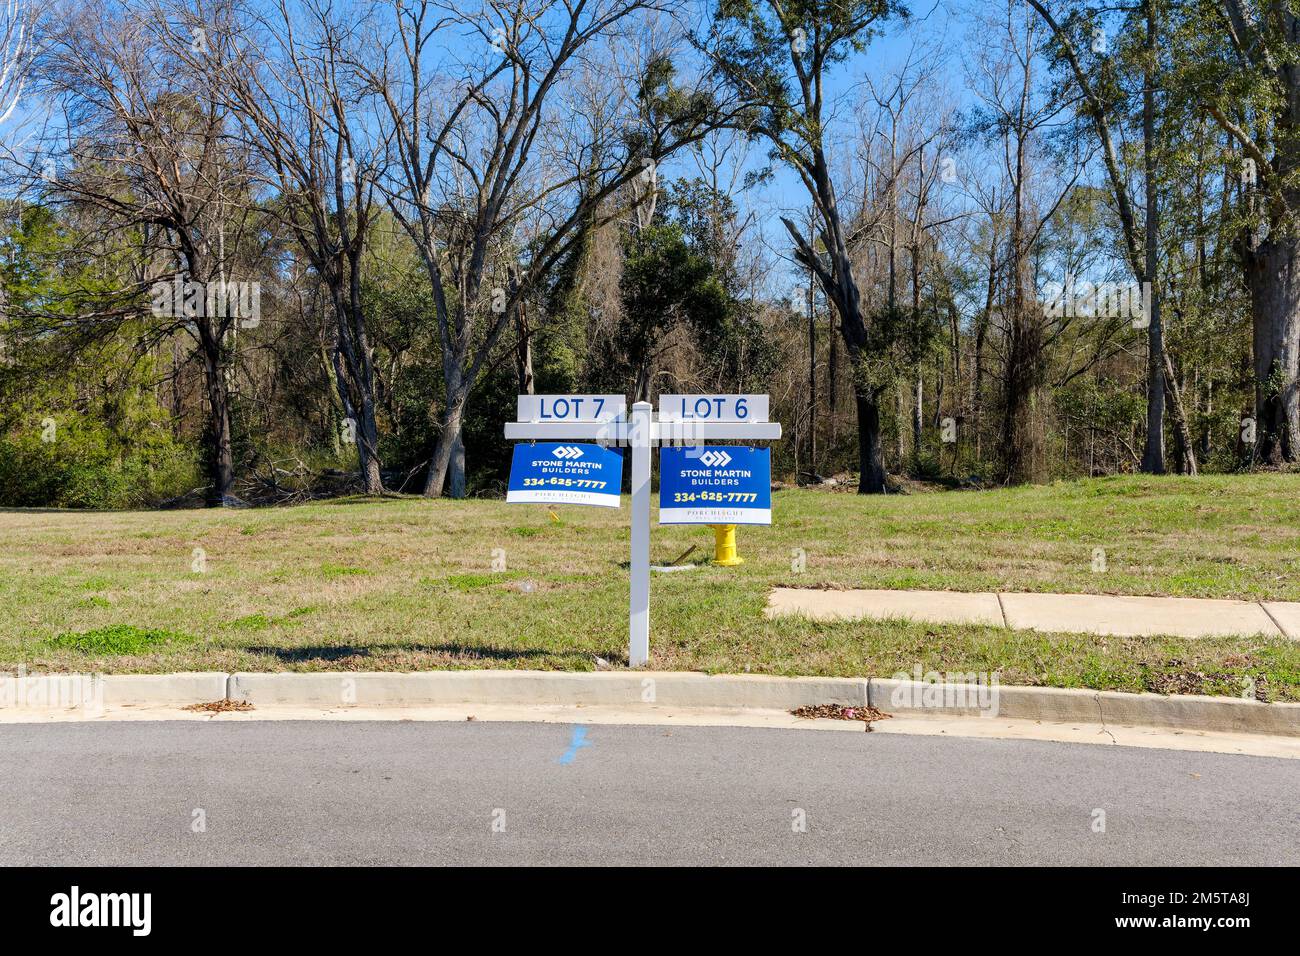 Unbesetzte, unverkaufte neue Wohngrundstücke, die auf eine Verlangsamung des Immobilienabschwungs oder möglicherweise auf eine Immobilienrezession in Montgomery, Alabama, USA, hindeuten. Stockfoto